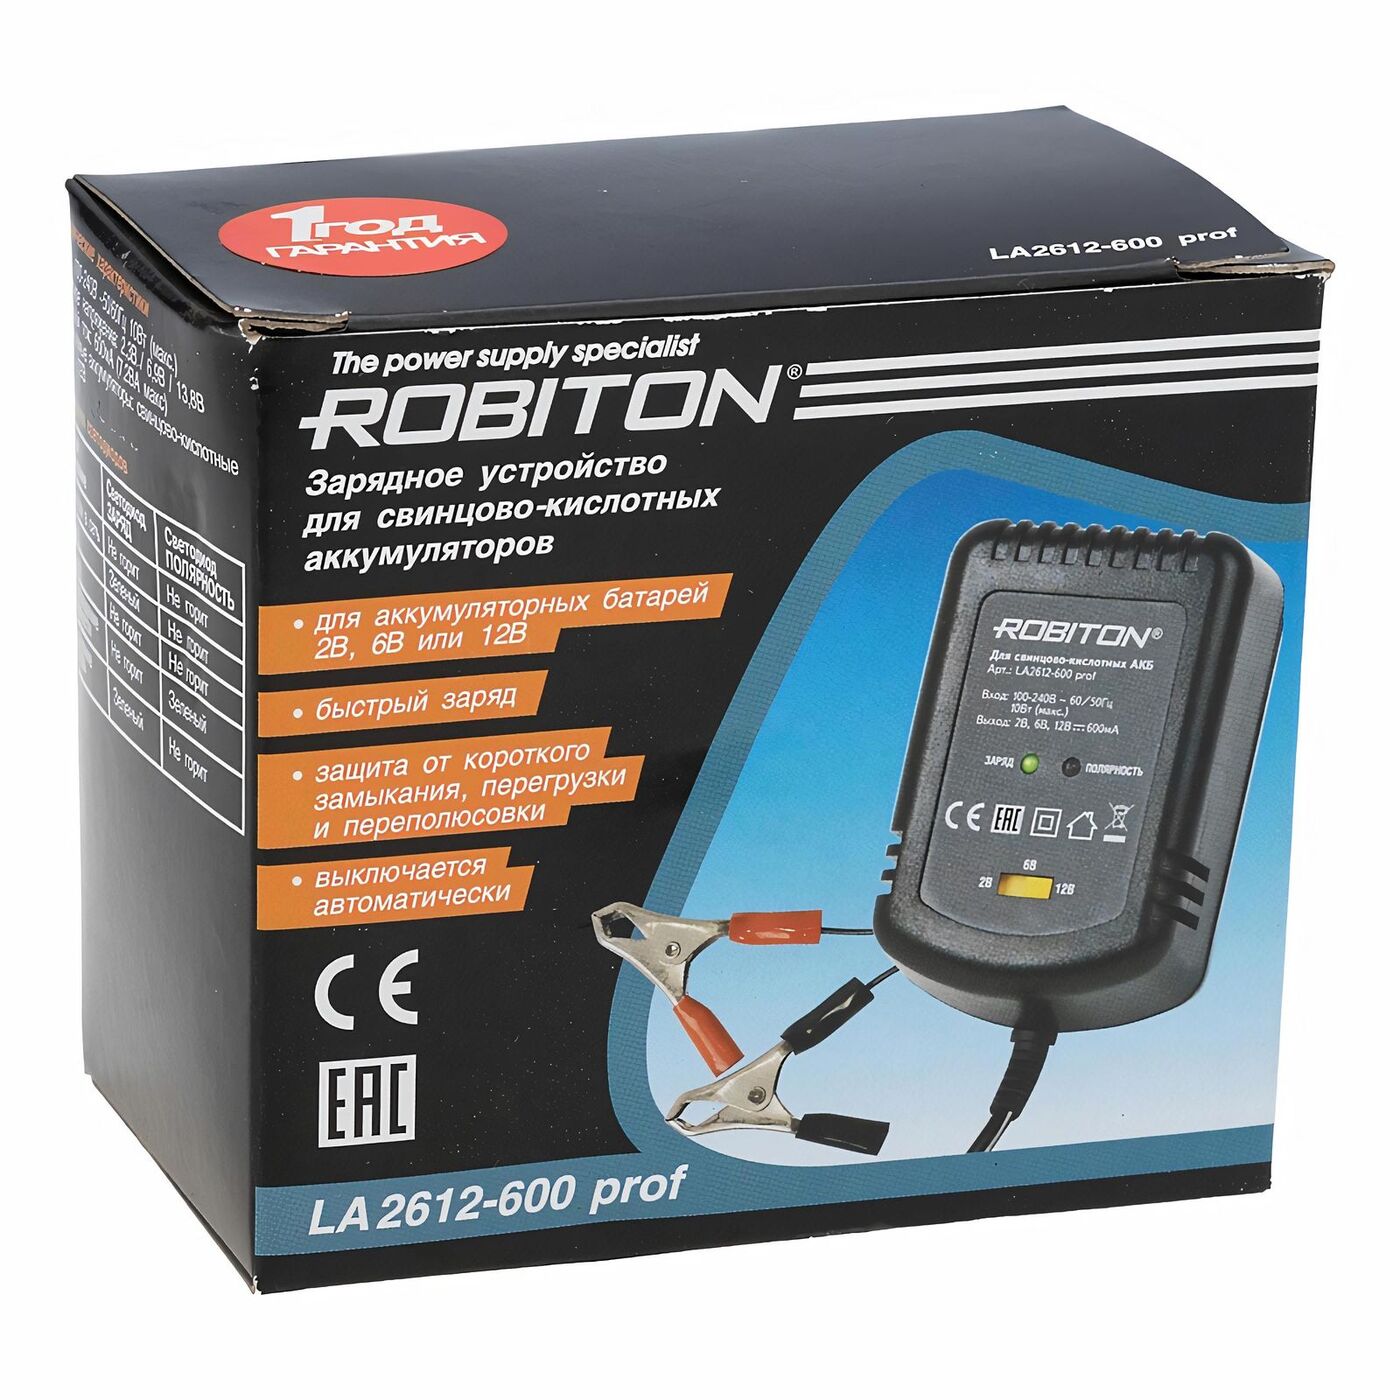 Зарядное устройство ROBITON LAC 2612-600 prof